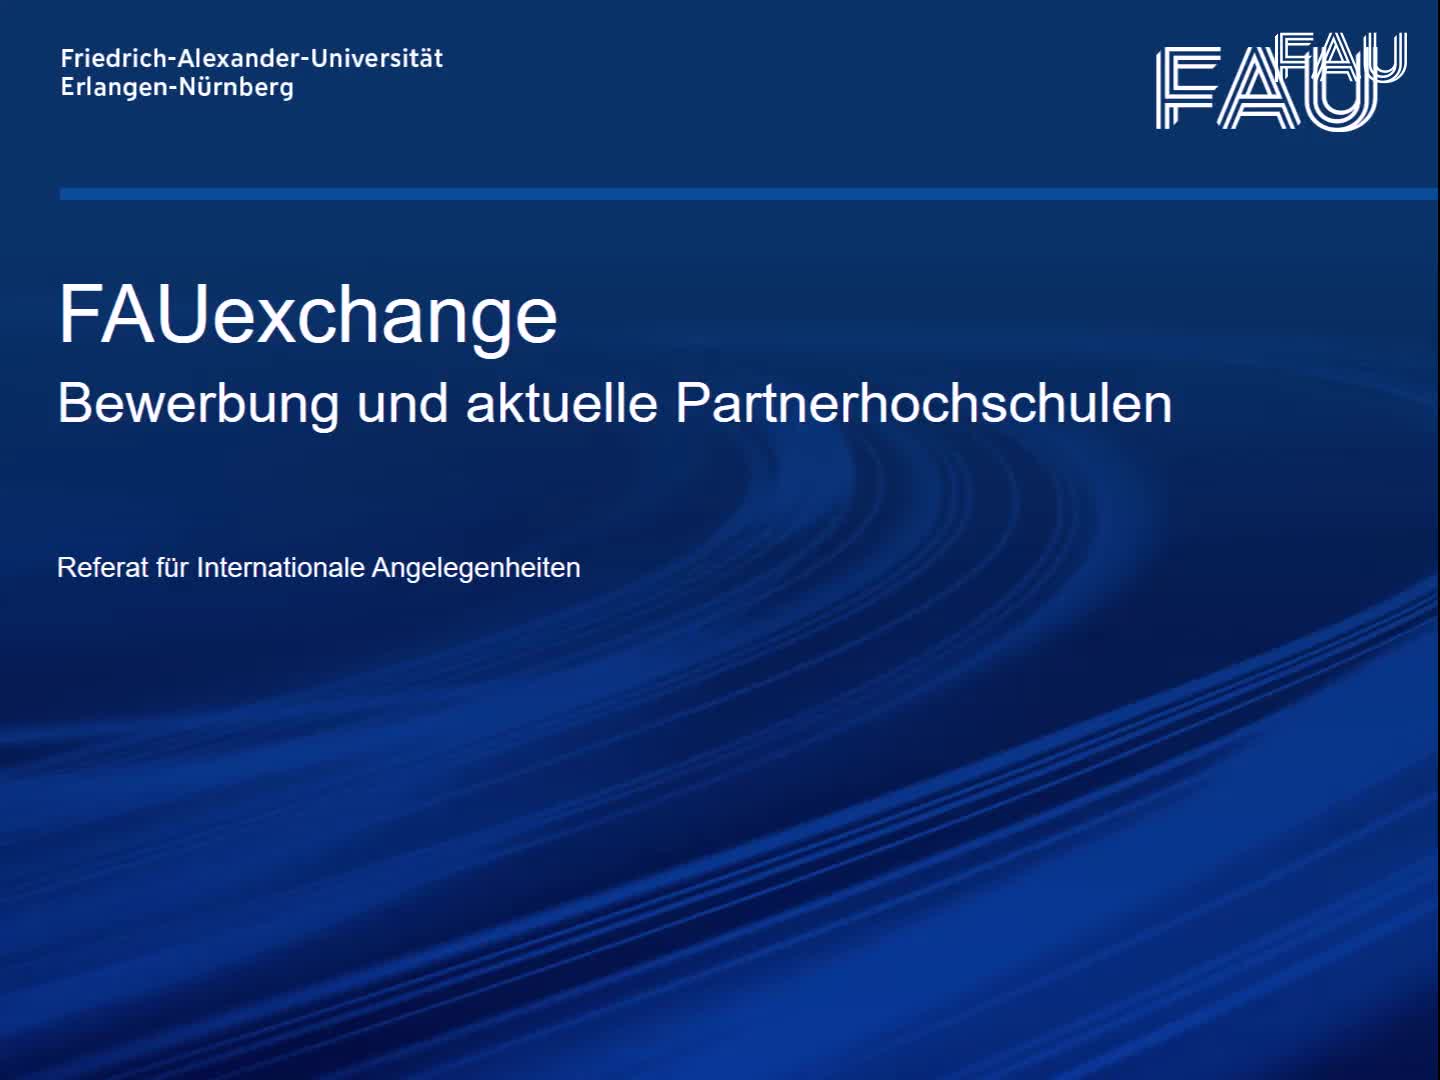 FAUExchange - Weltweiter Direktaustausch 23/24 preview image